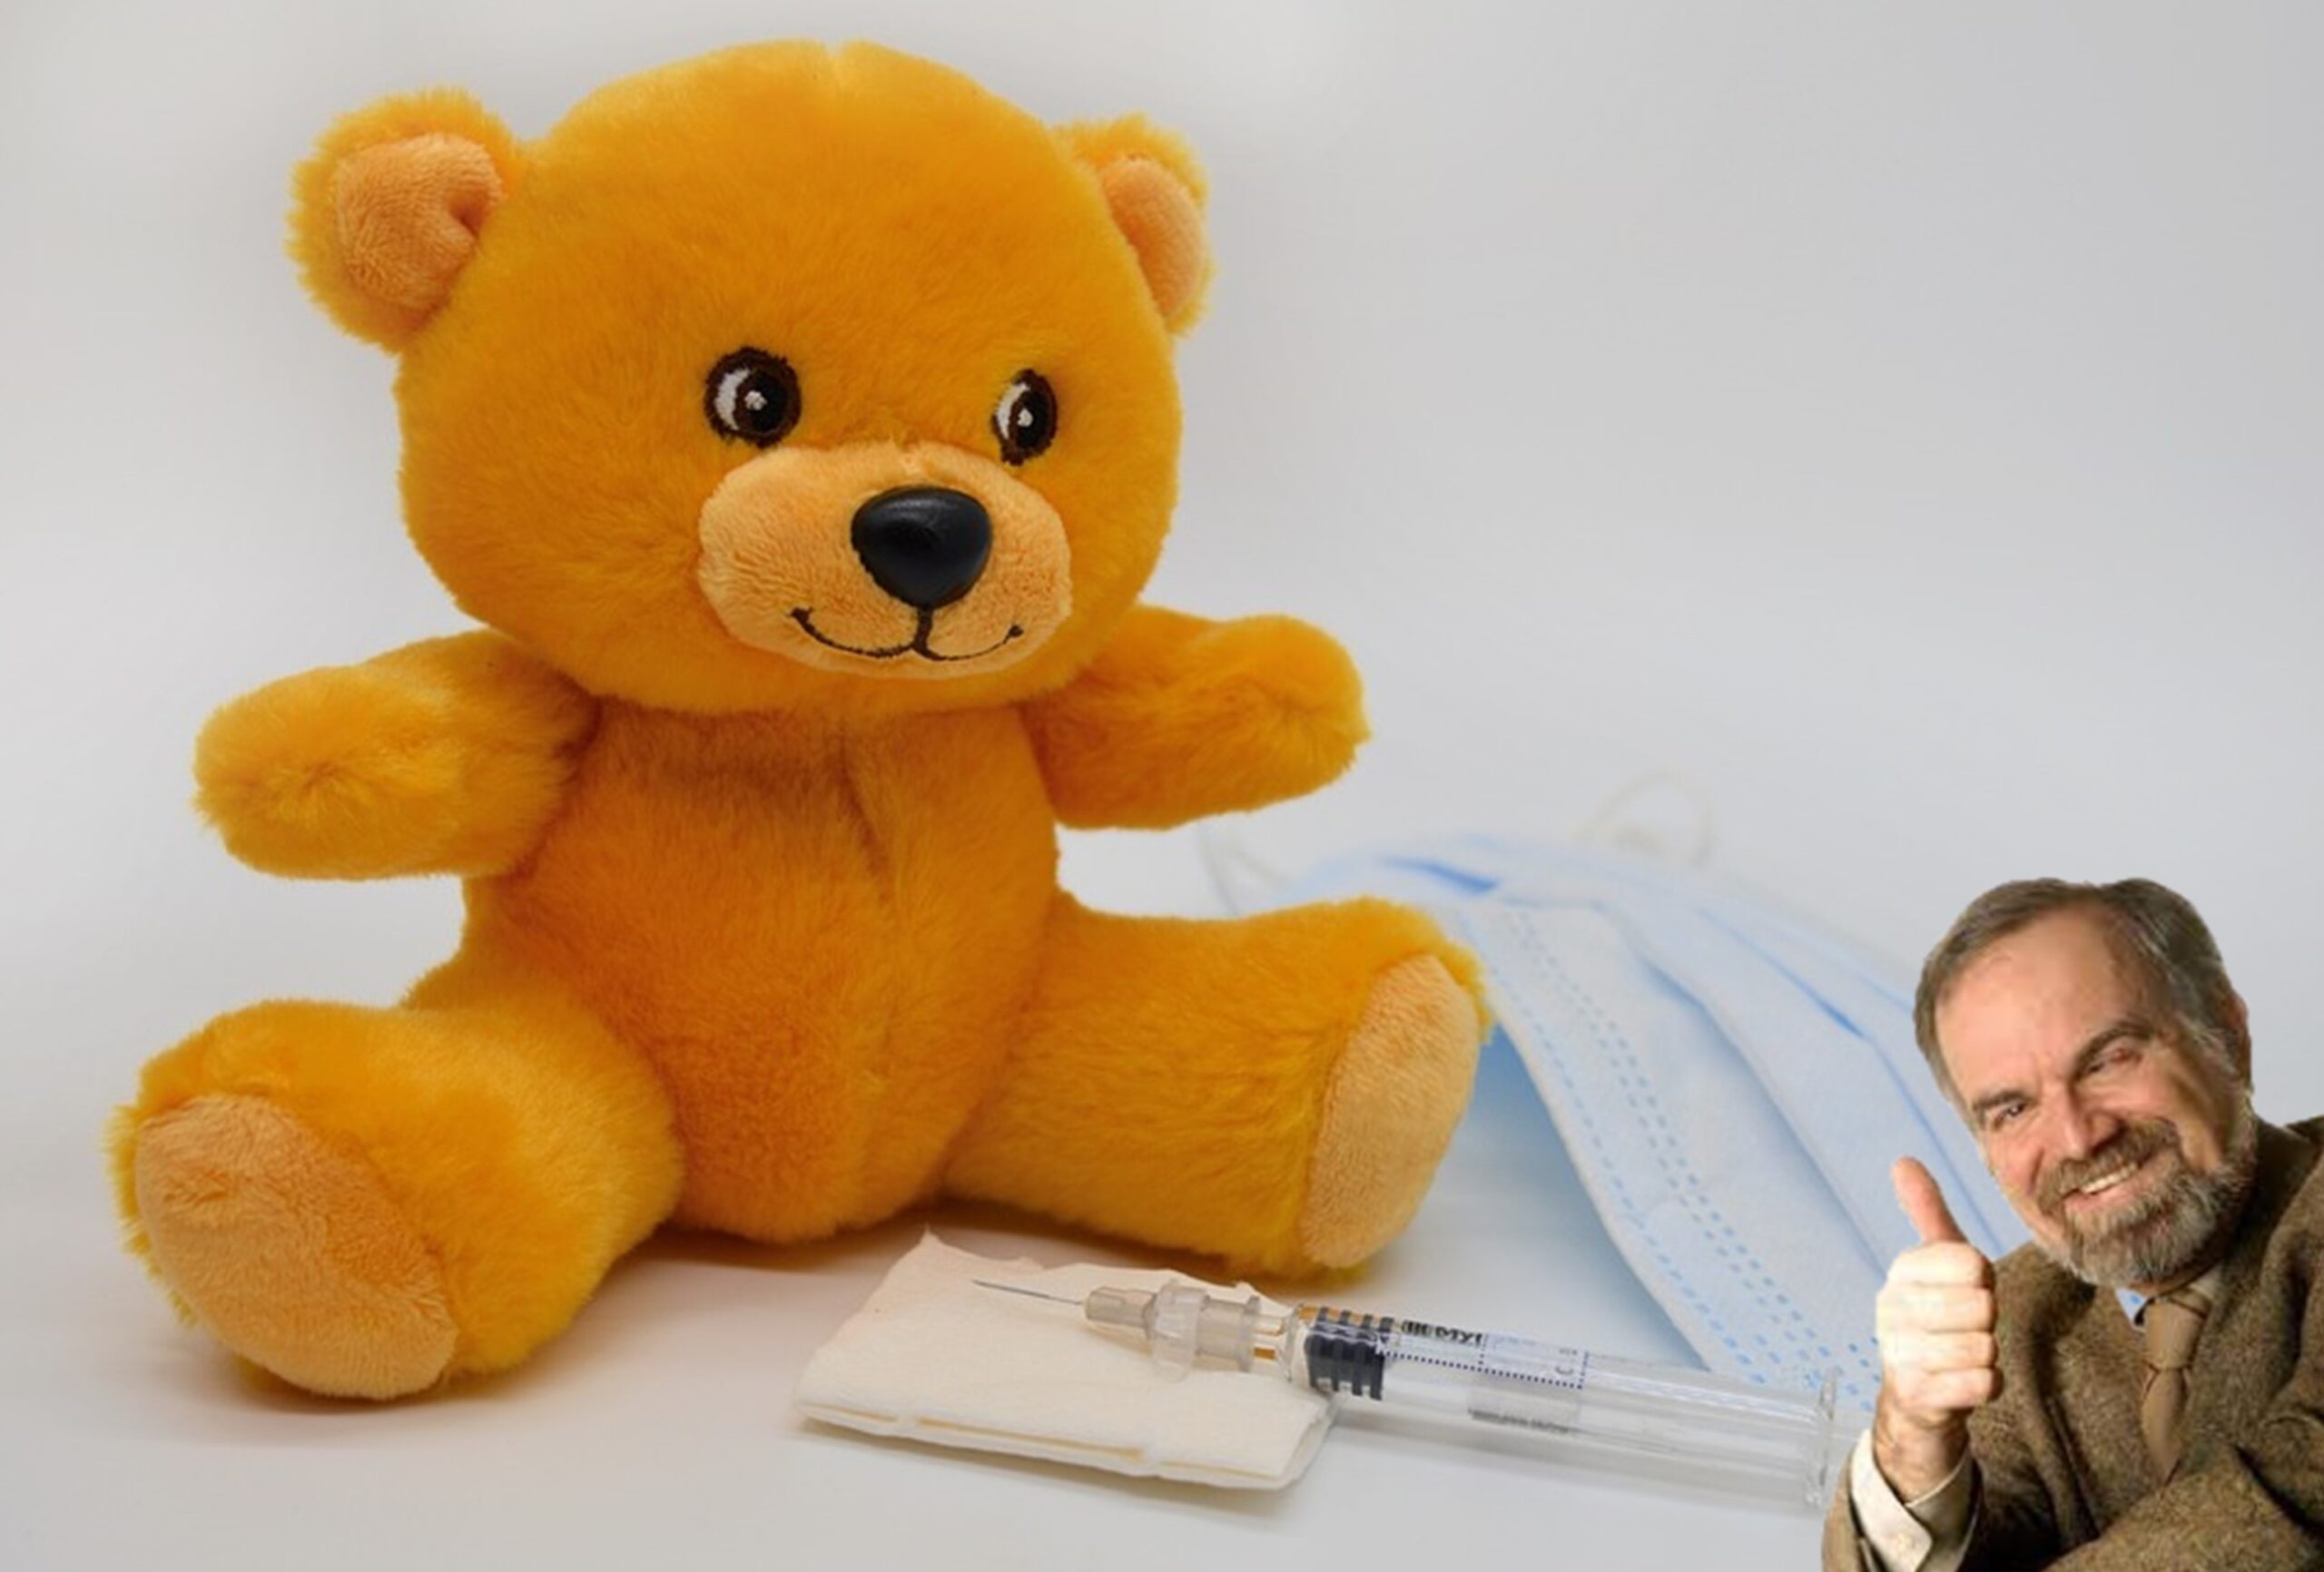 Farnetani: “consiglio tutti i genitori di vaccinare i figli piccoli (6 mesi – 5 anni) contro il Covid”